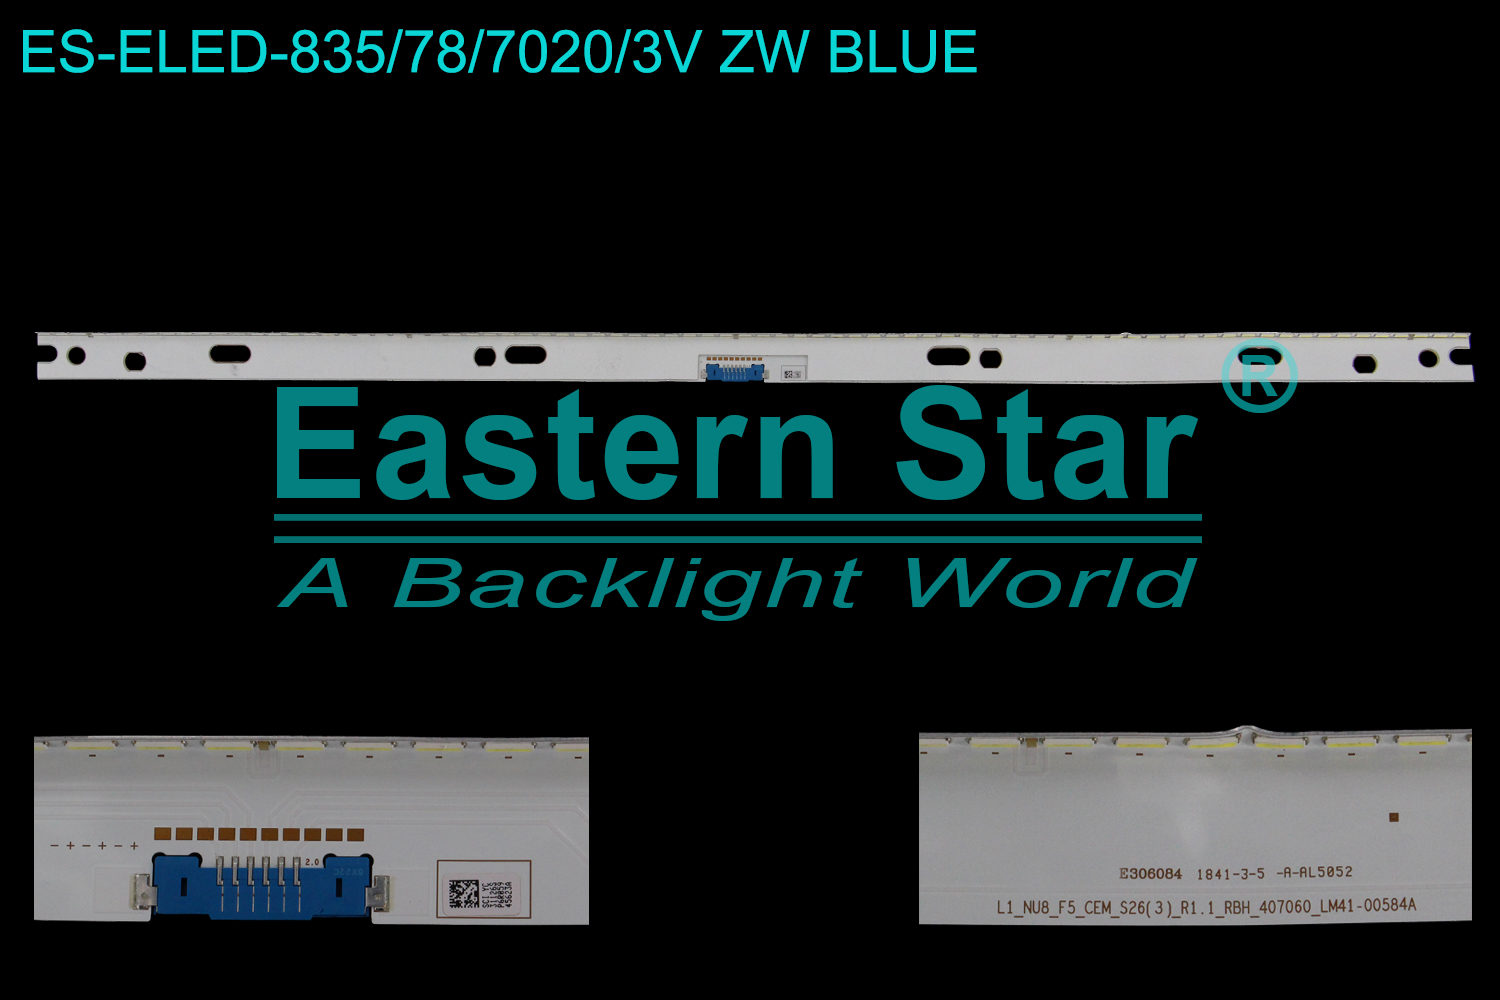 ES-ELED-835 ELED/EDGE TV backlight use for 65'' Samsung UA65NU8000 L1_NU8_F5_CEM_S26(3)_R1.1_RBH_407060_LM41-00584A TV LED BAR(1)